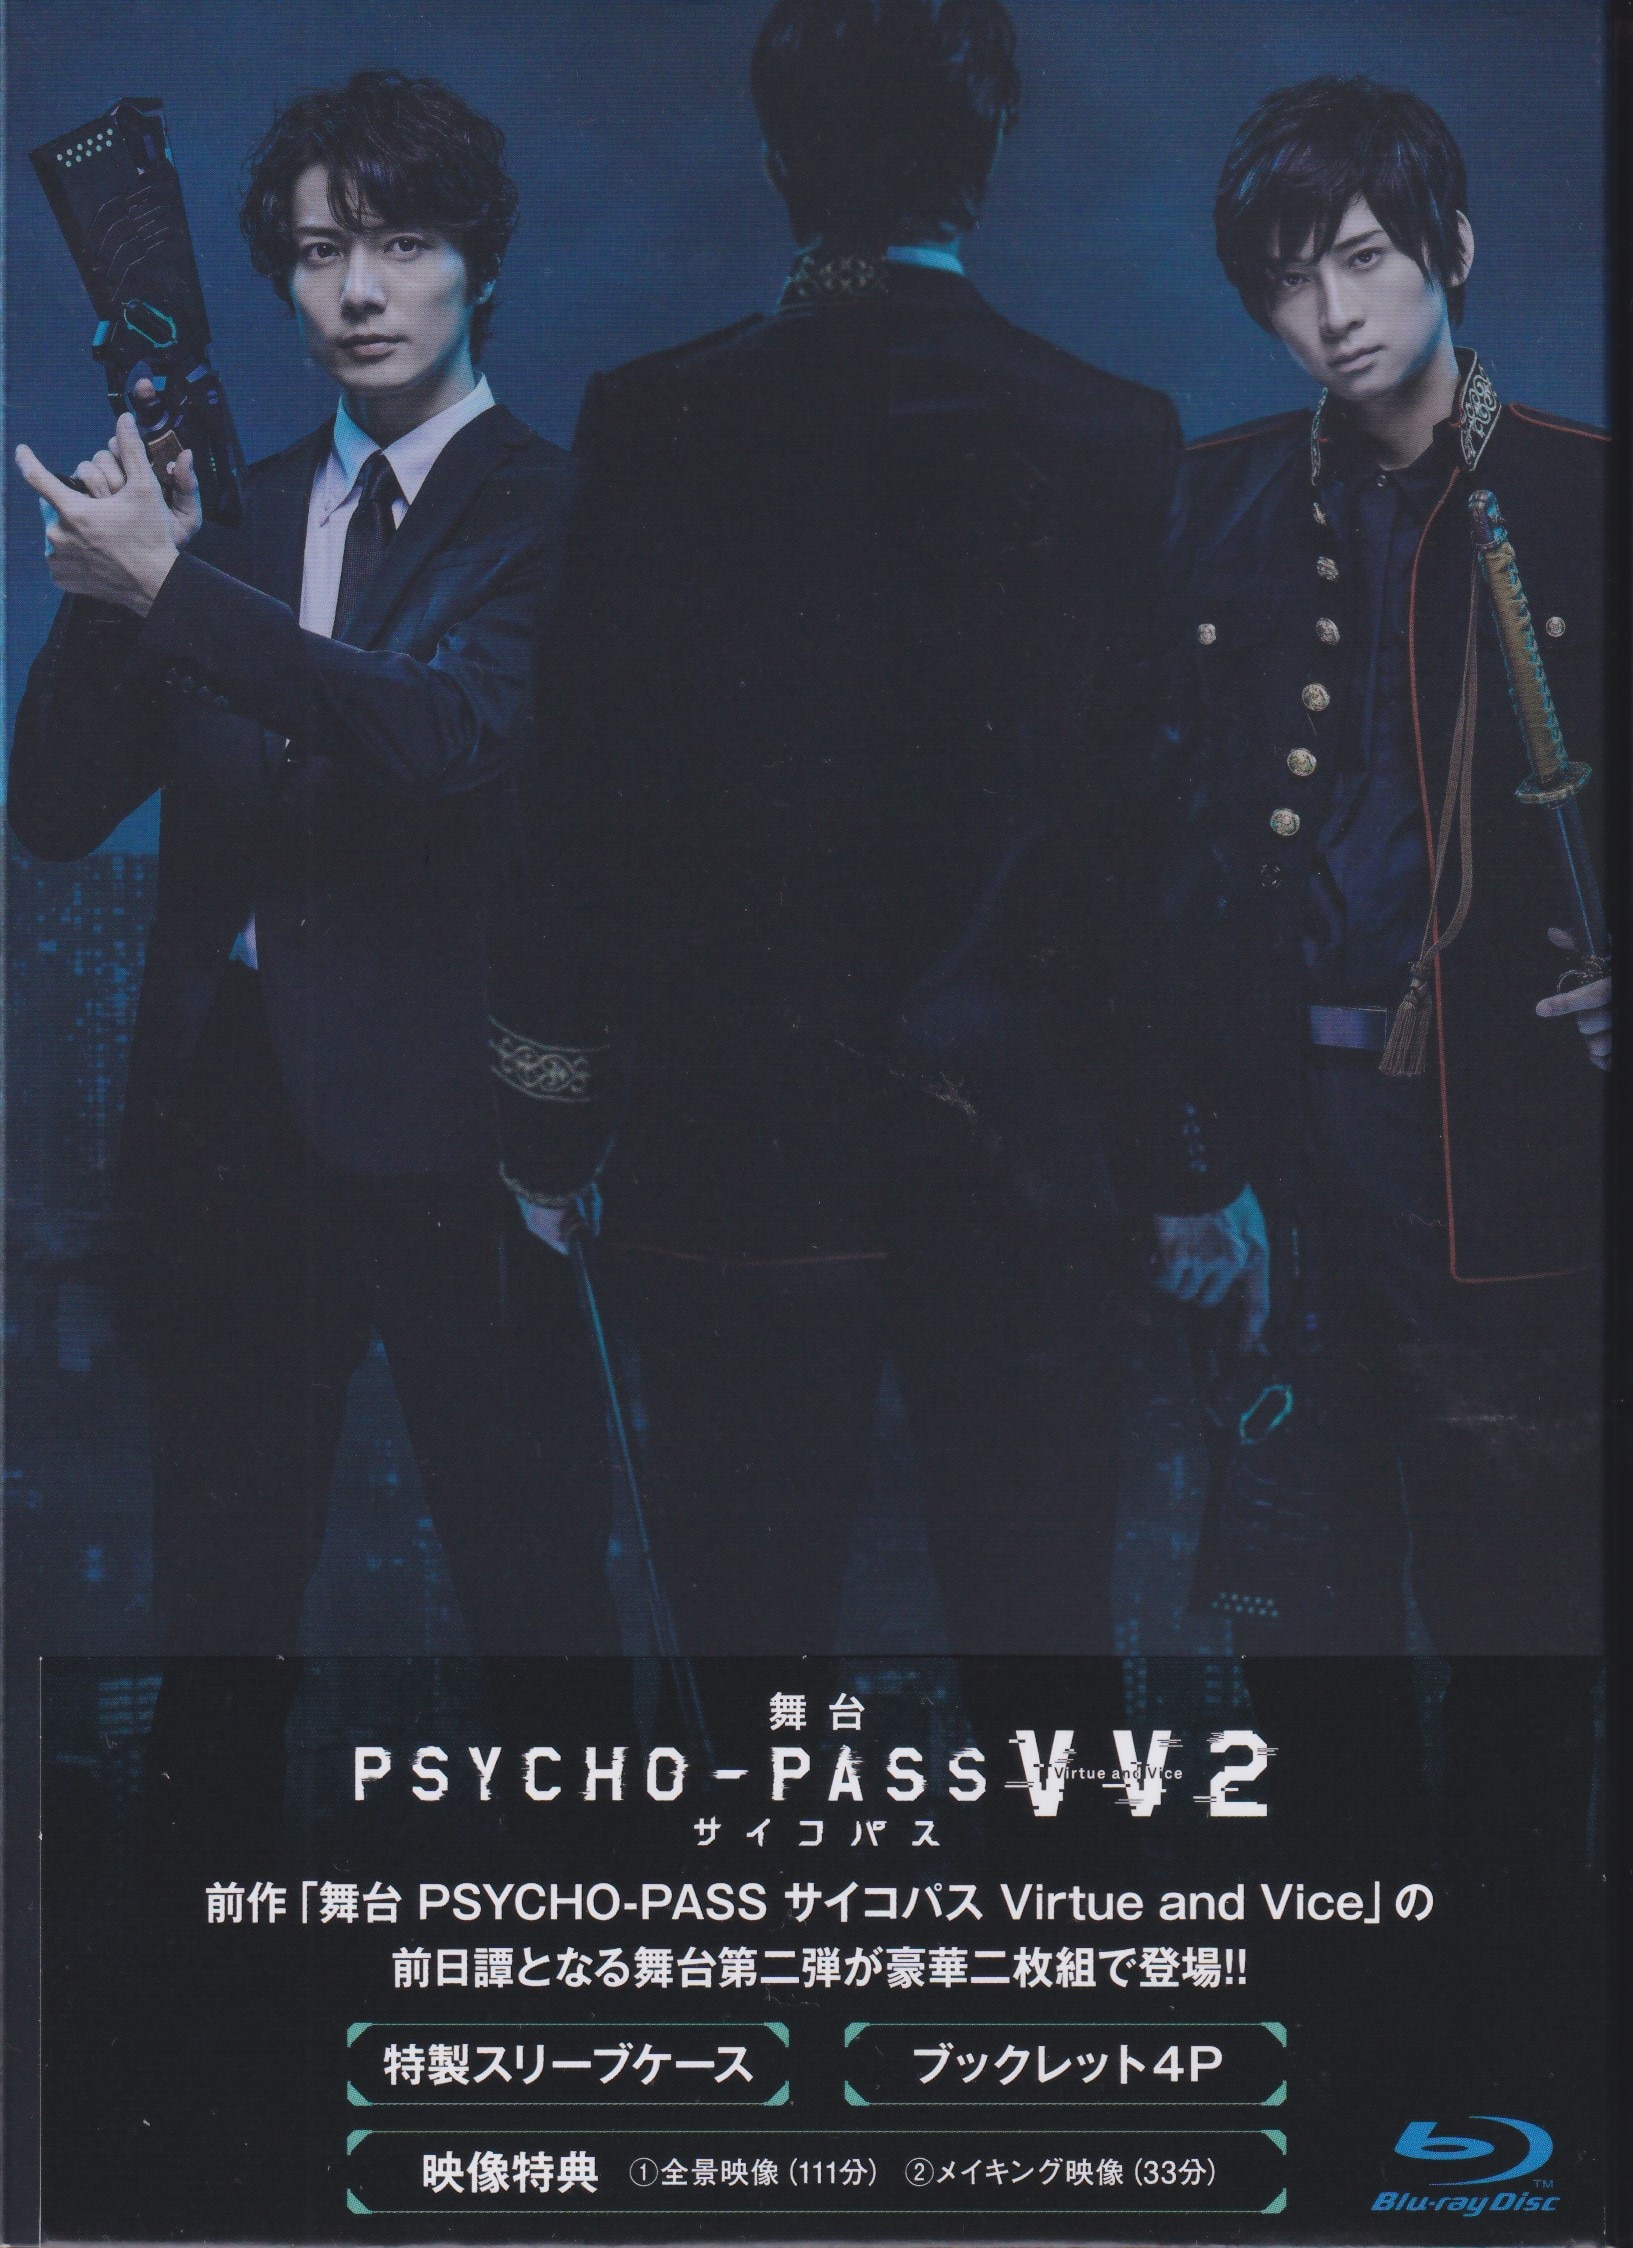 月華サイコパスBlu-ray舞台PSYCHO-PASS Virtue and Vice2セット - 人文